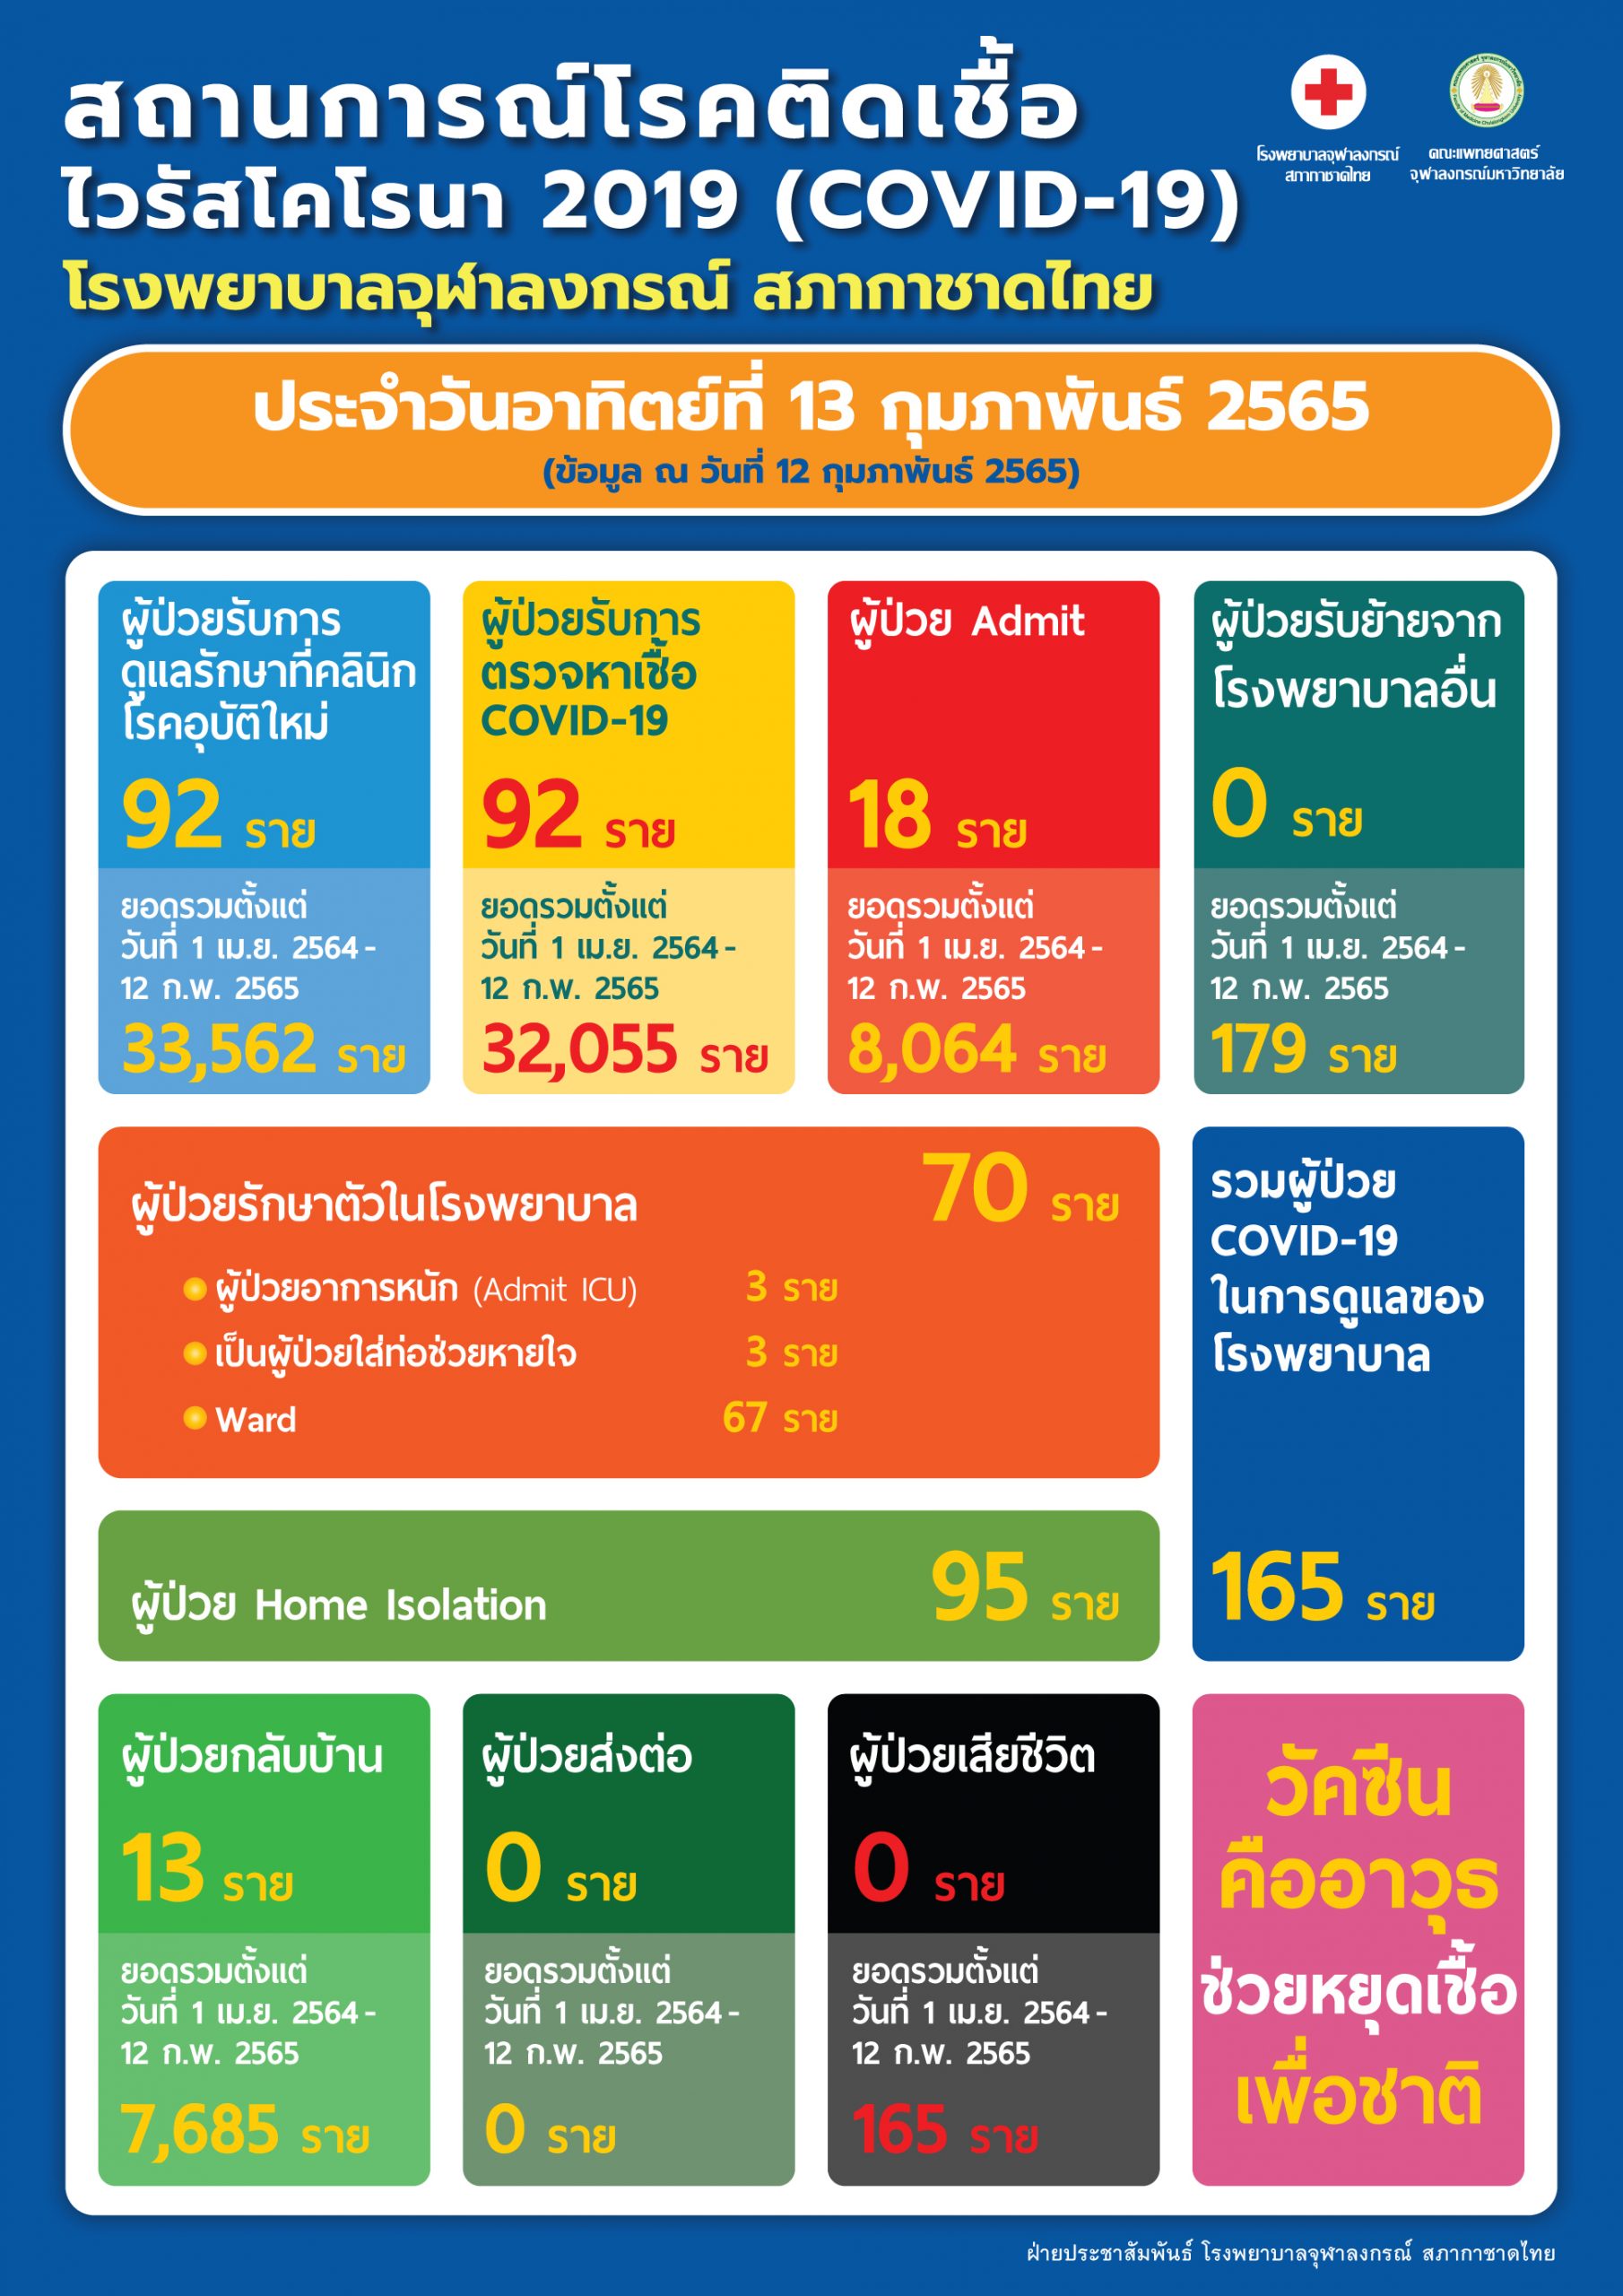 สถานการณ์โรคติดเชื้อไวรัสโคโรนา 2019 (COVID-19) โรงพยาบาลจุฬาลงกรณ์ สภากาชาดไทย ประจำวันอาทิตย์ที่ 13 กุมภาพันธ์ 2565